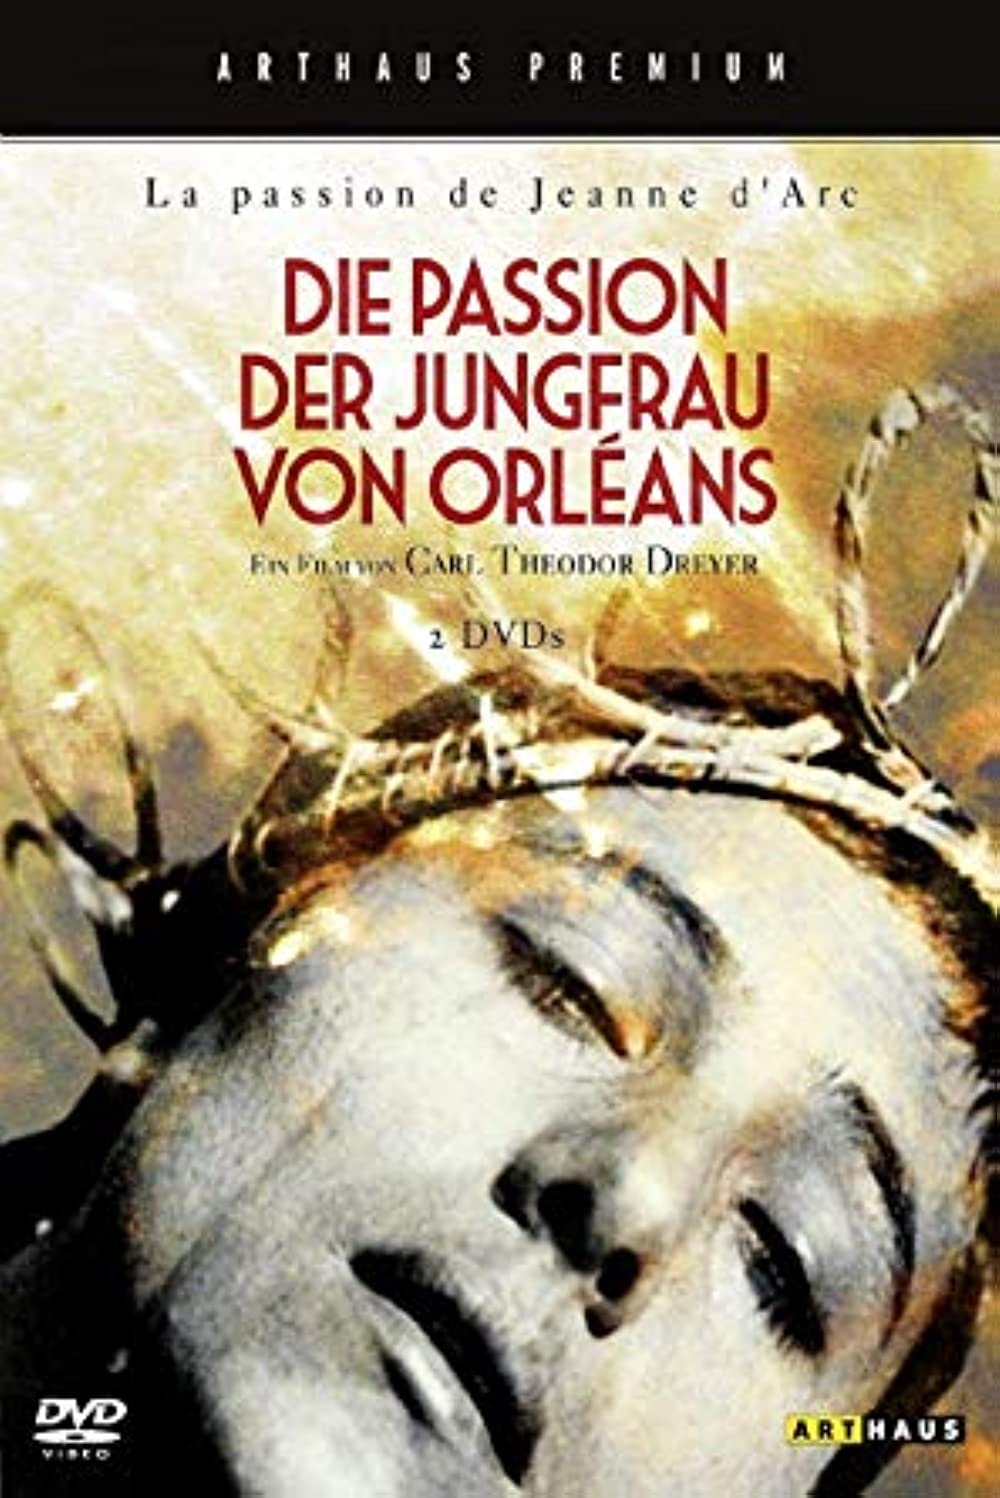 Filmbeschreibung zu Die Passion der Jungfrau von Orleans